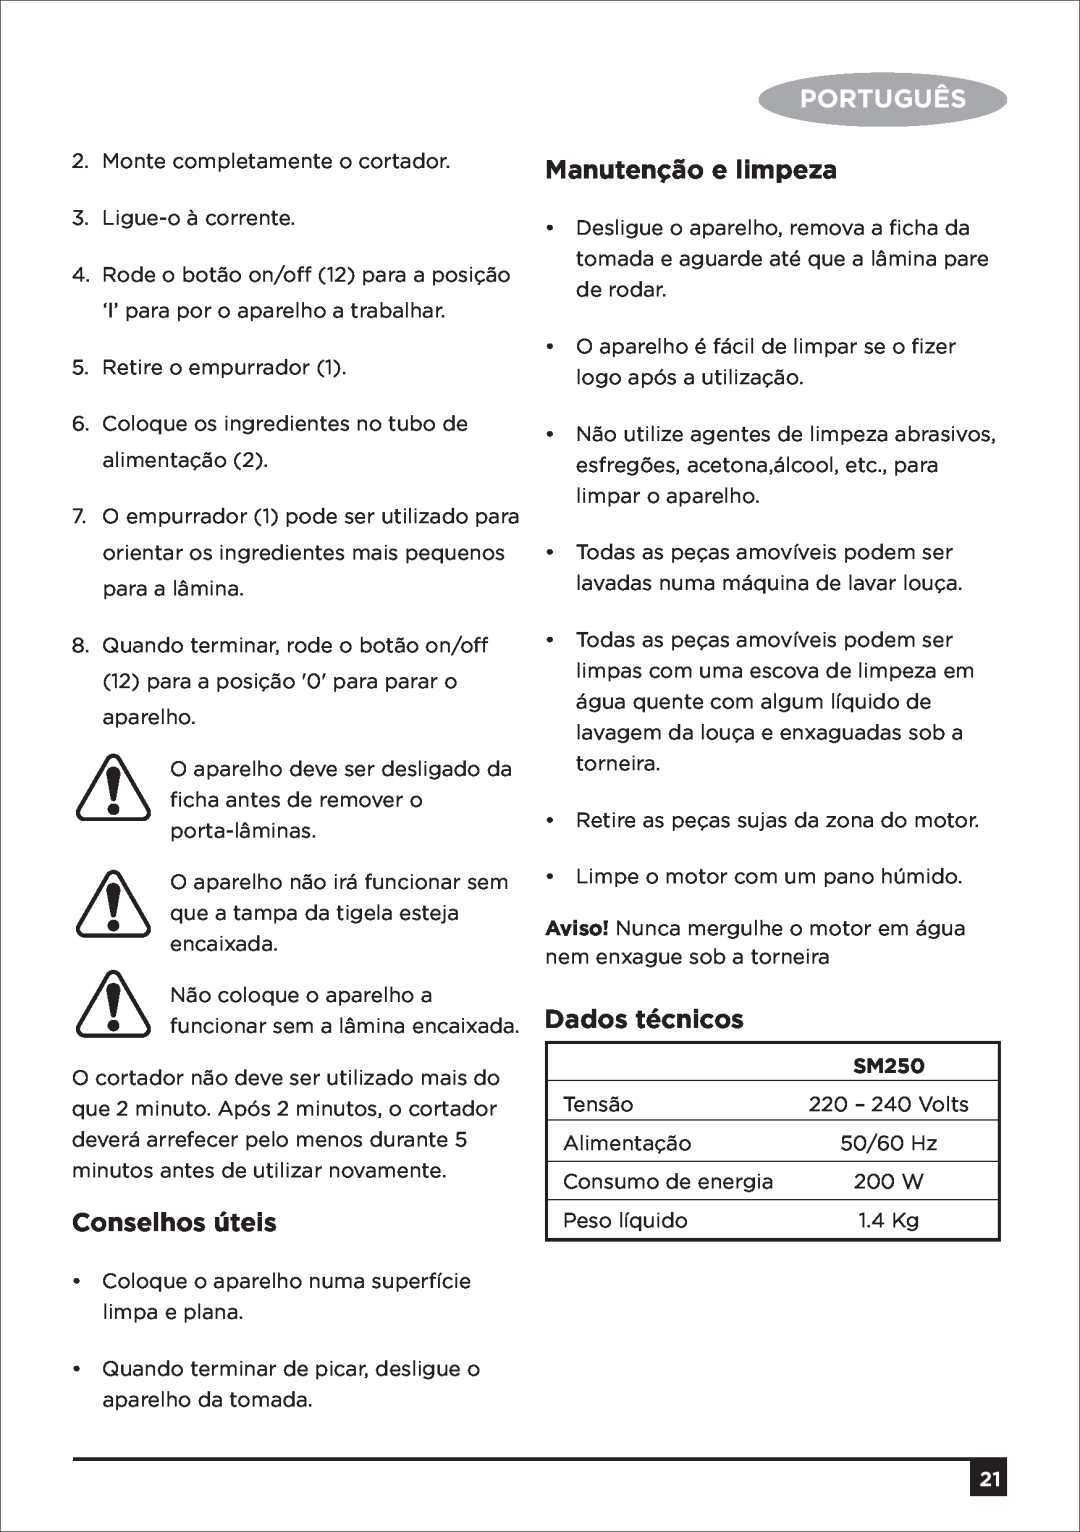 Black & Decker SM250 manual Conselhos úteis, Português, Manutenção e limpeza, Dados técnicos 